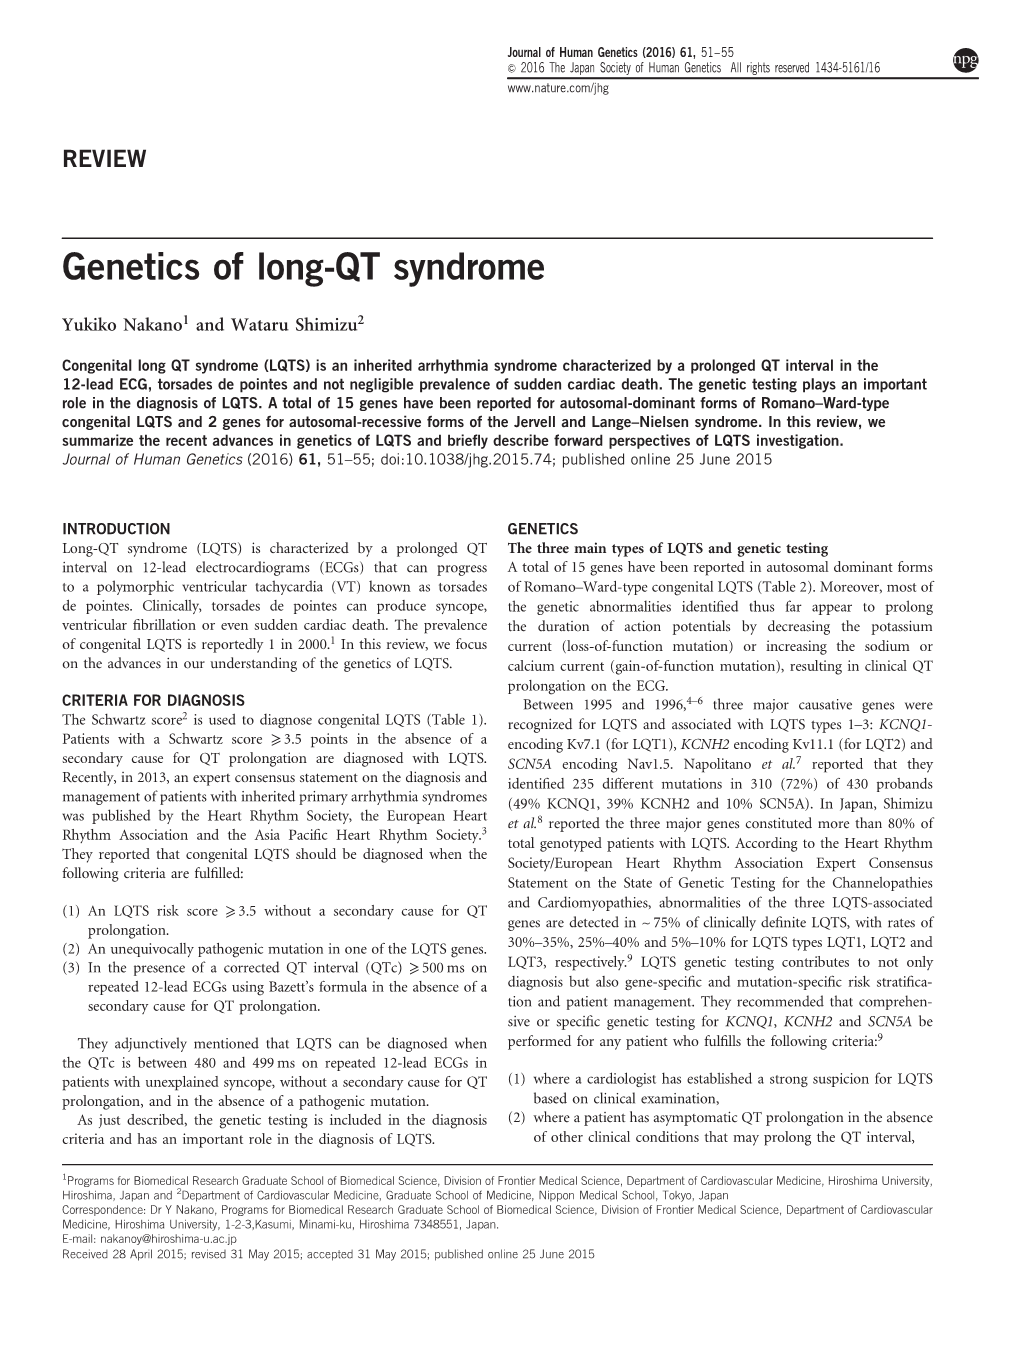 Genetics of Long-QT Syndrome